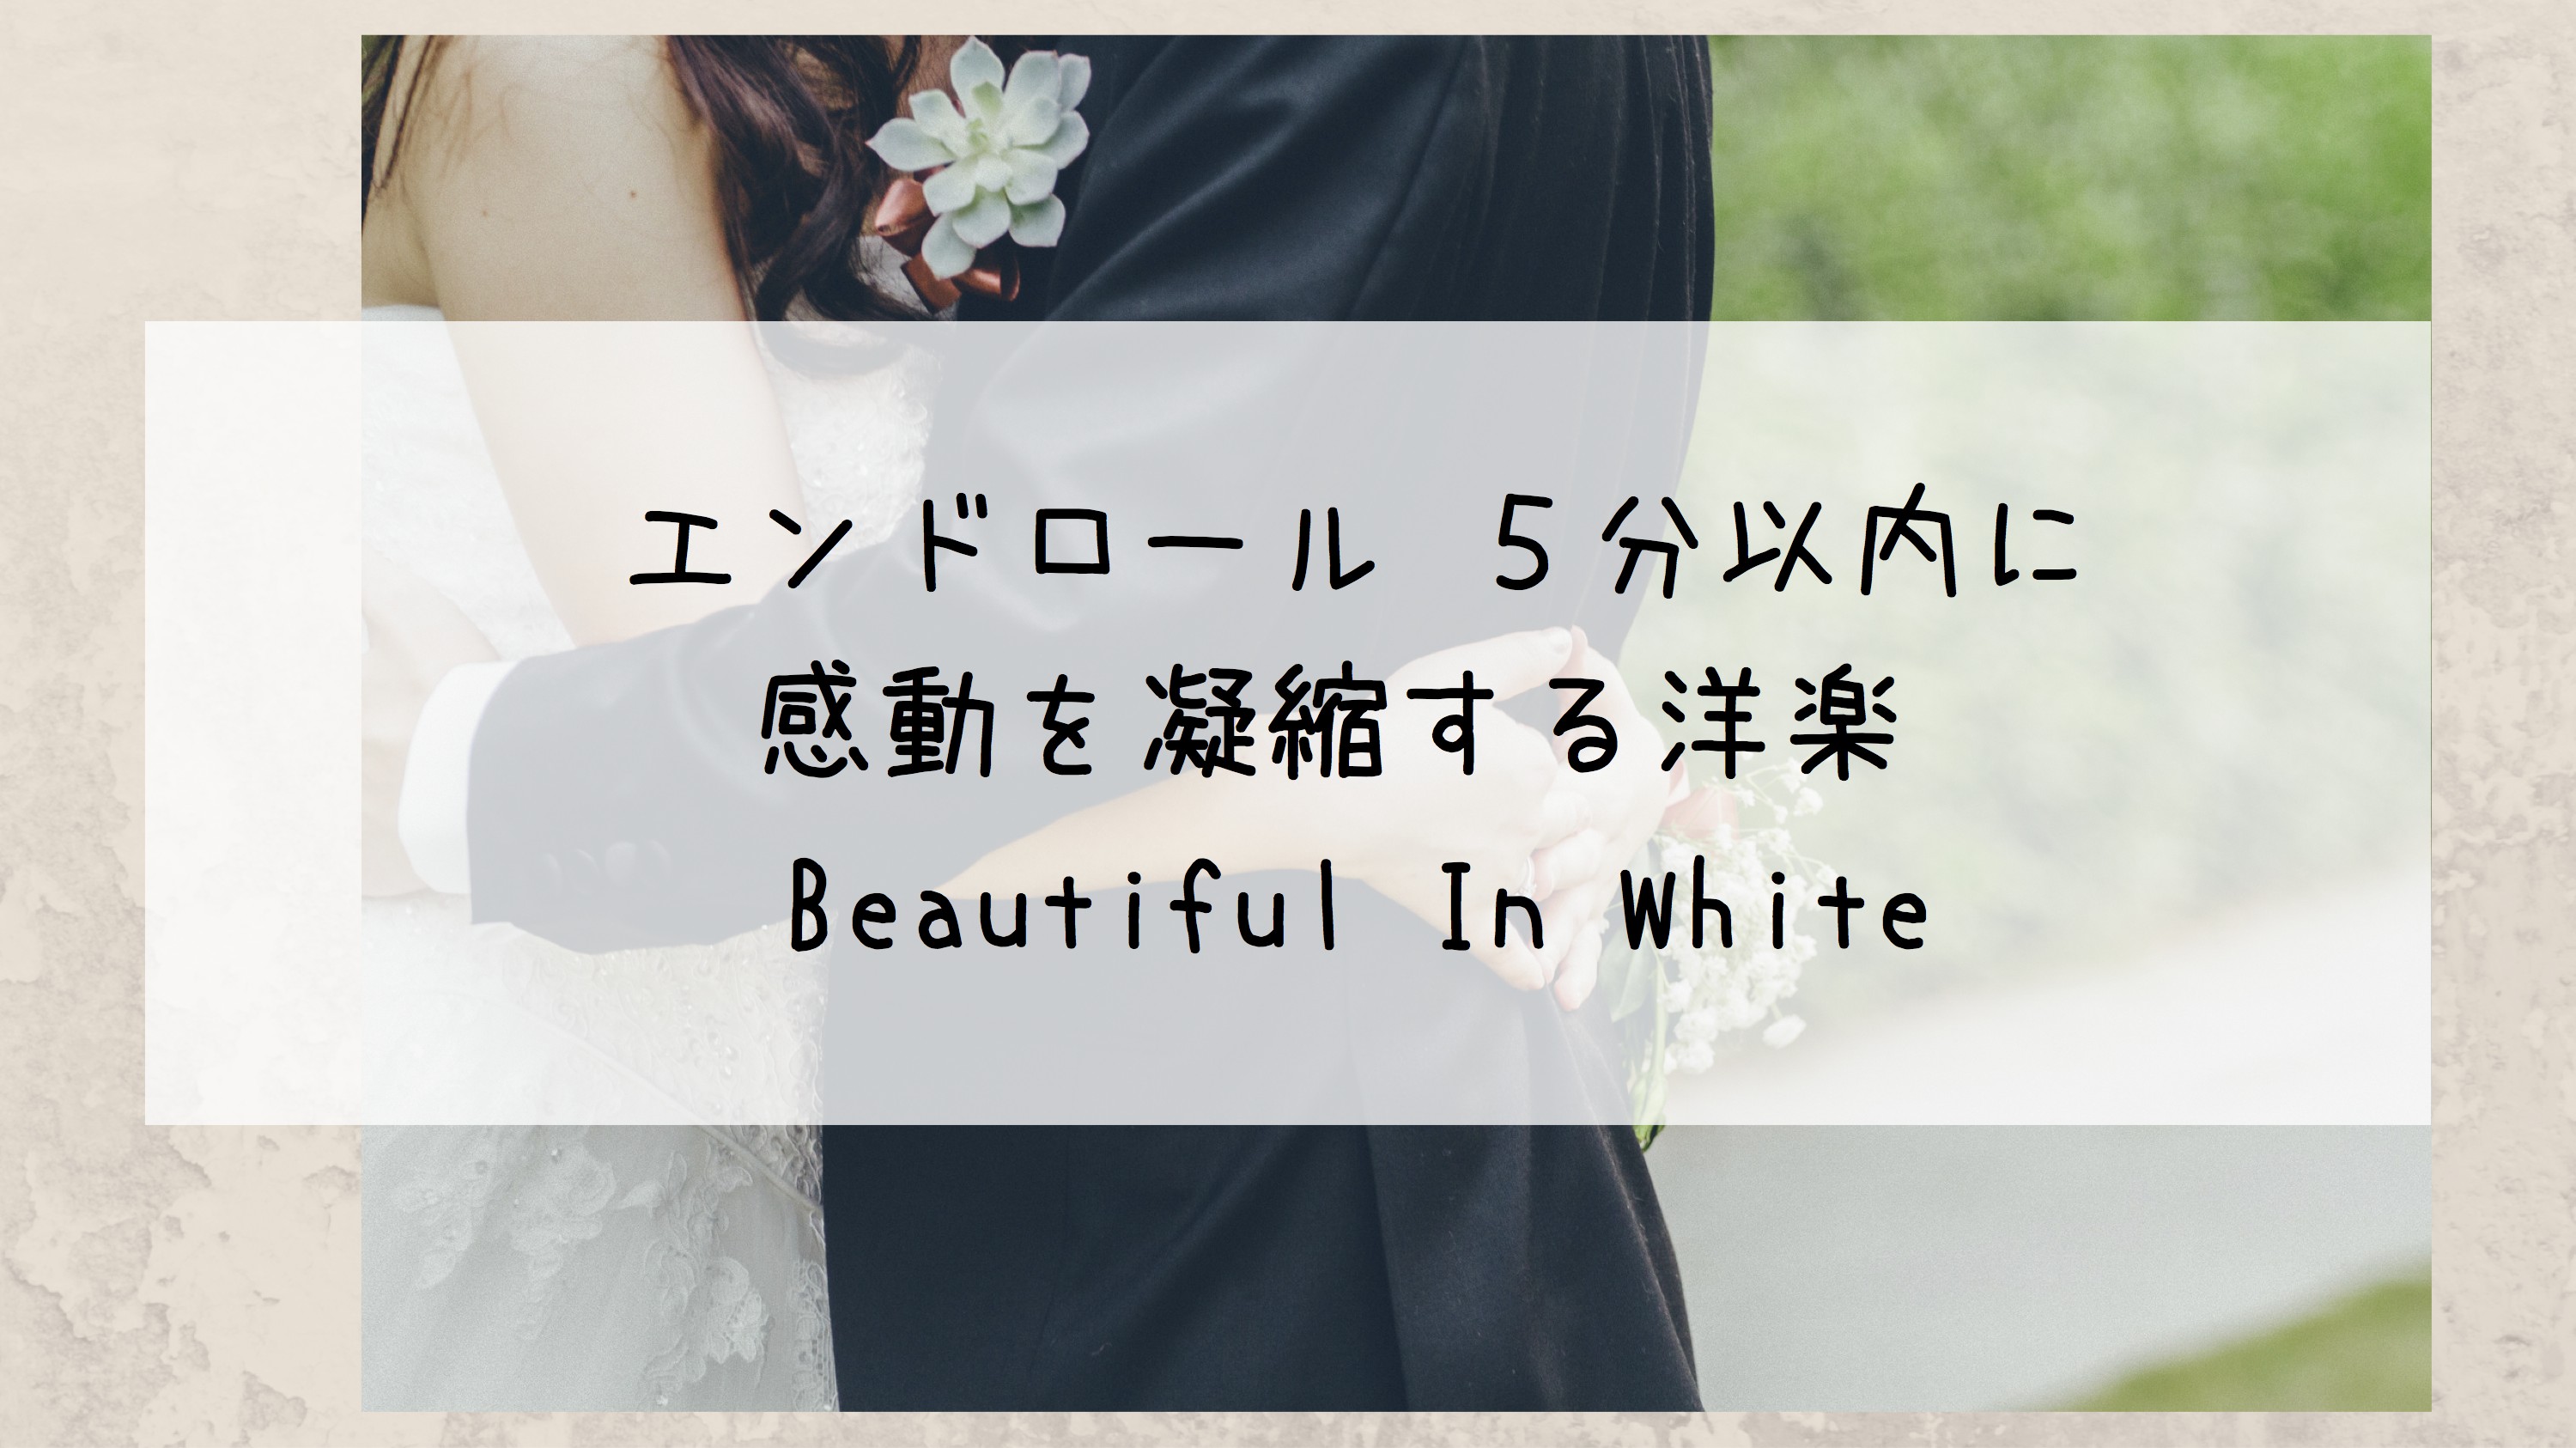 結婚式エンドロール 5分以内に感動を凝縮する洋楽 /Beautiful In White Bridal designer